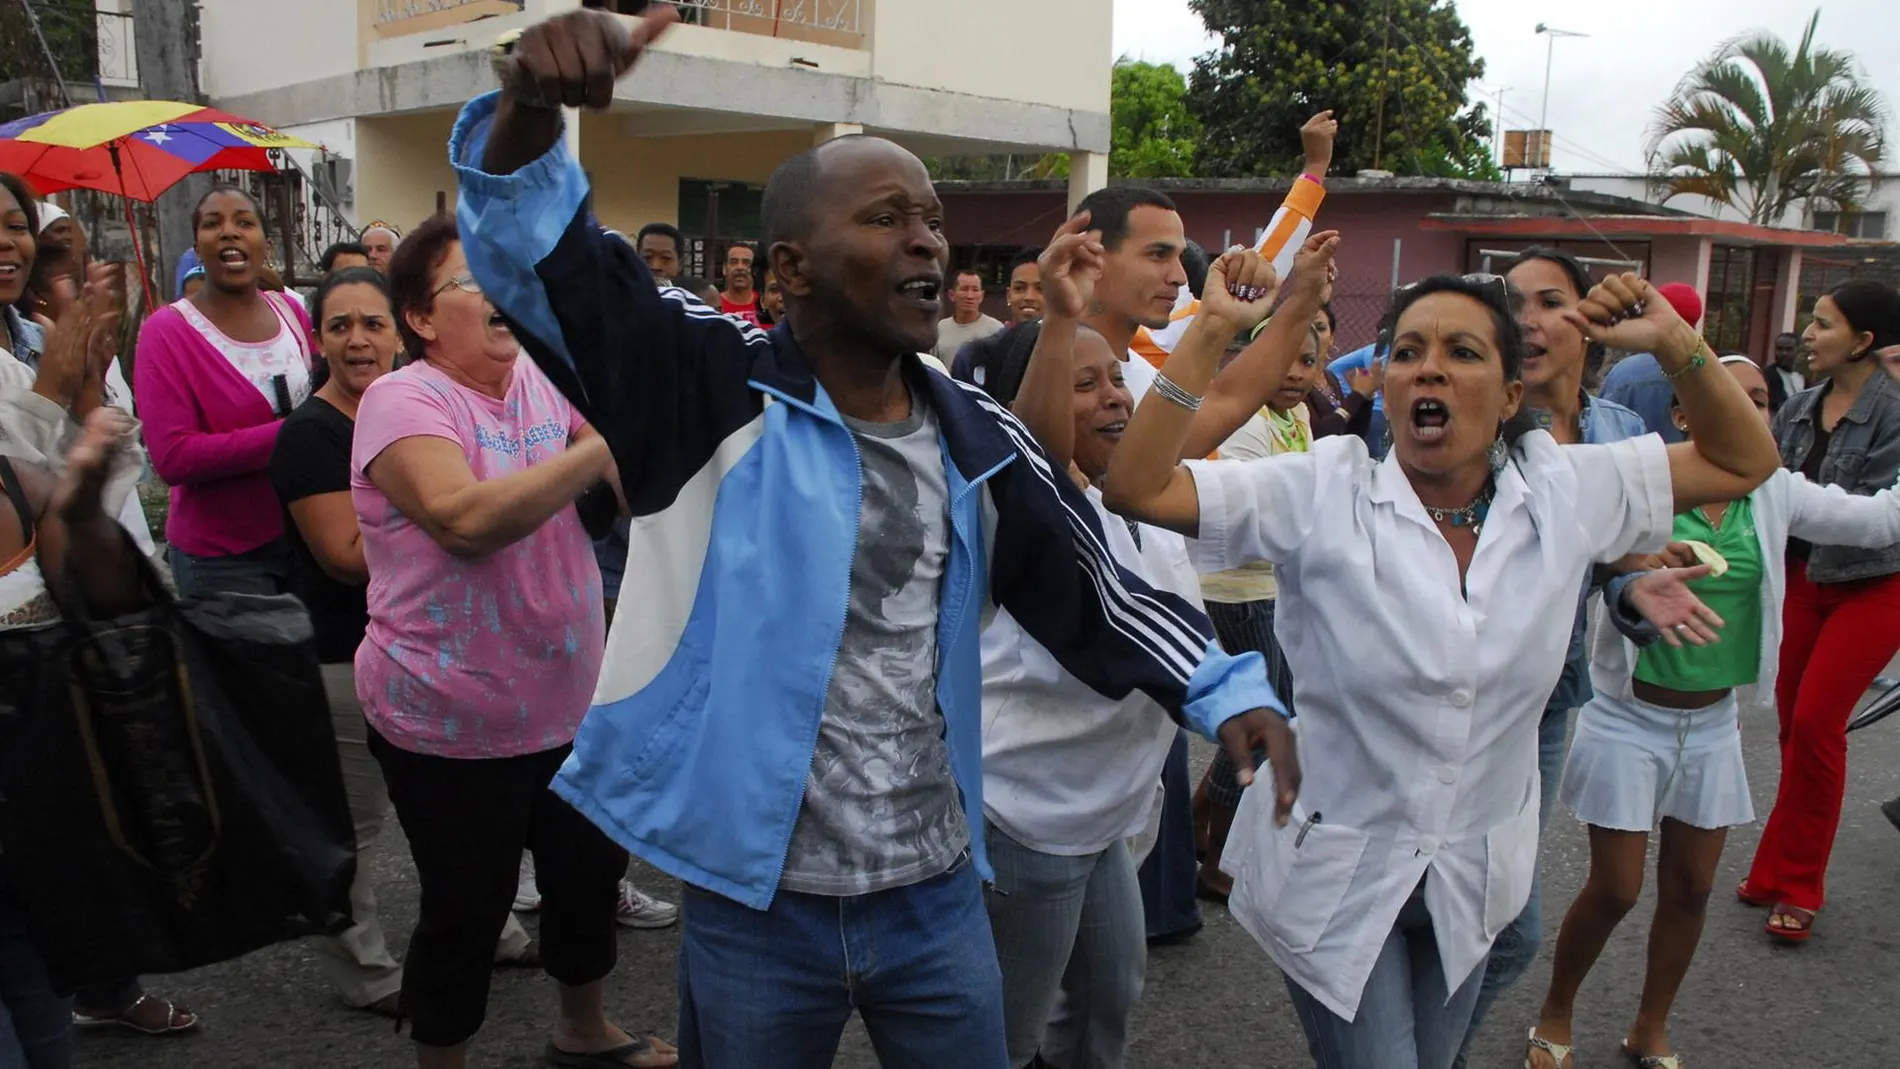 Represión policial contra los manifestantes en Cuba que protestaban contra el Gobierno